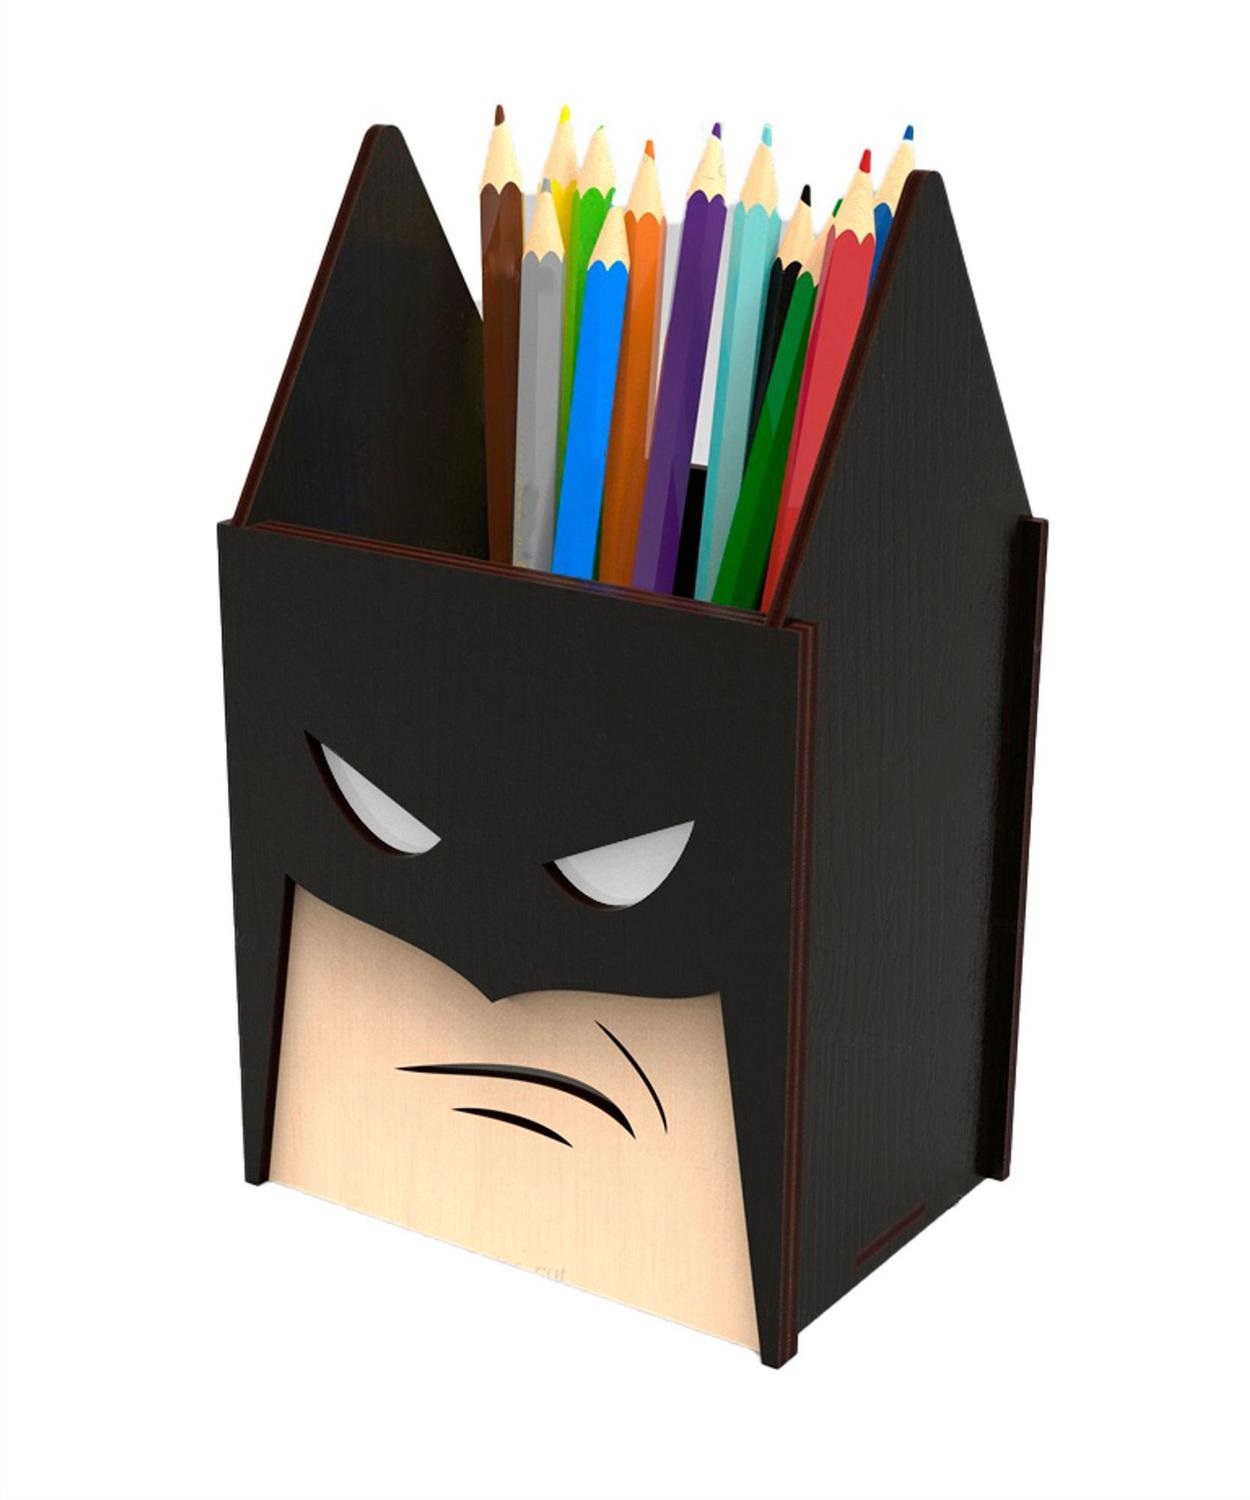 激光切割蝙蝠侠超级英雄笔筒